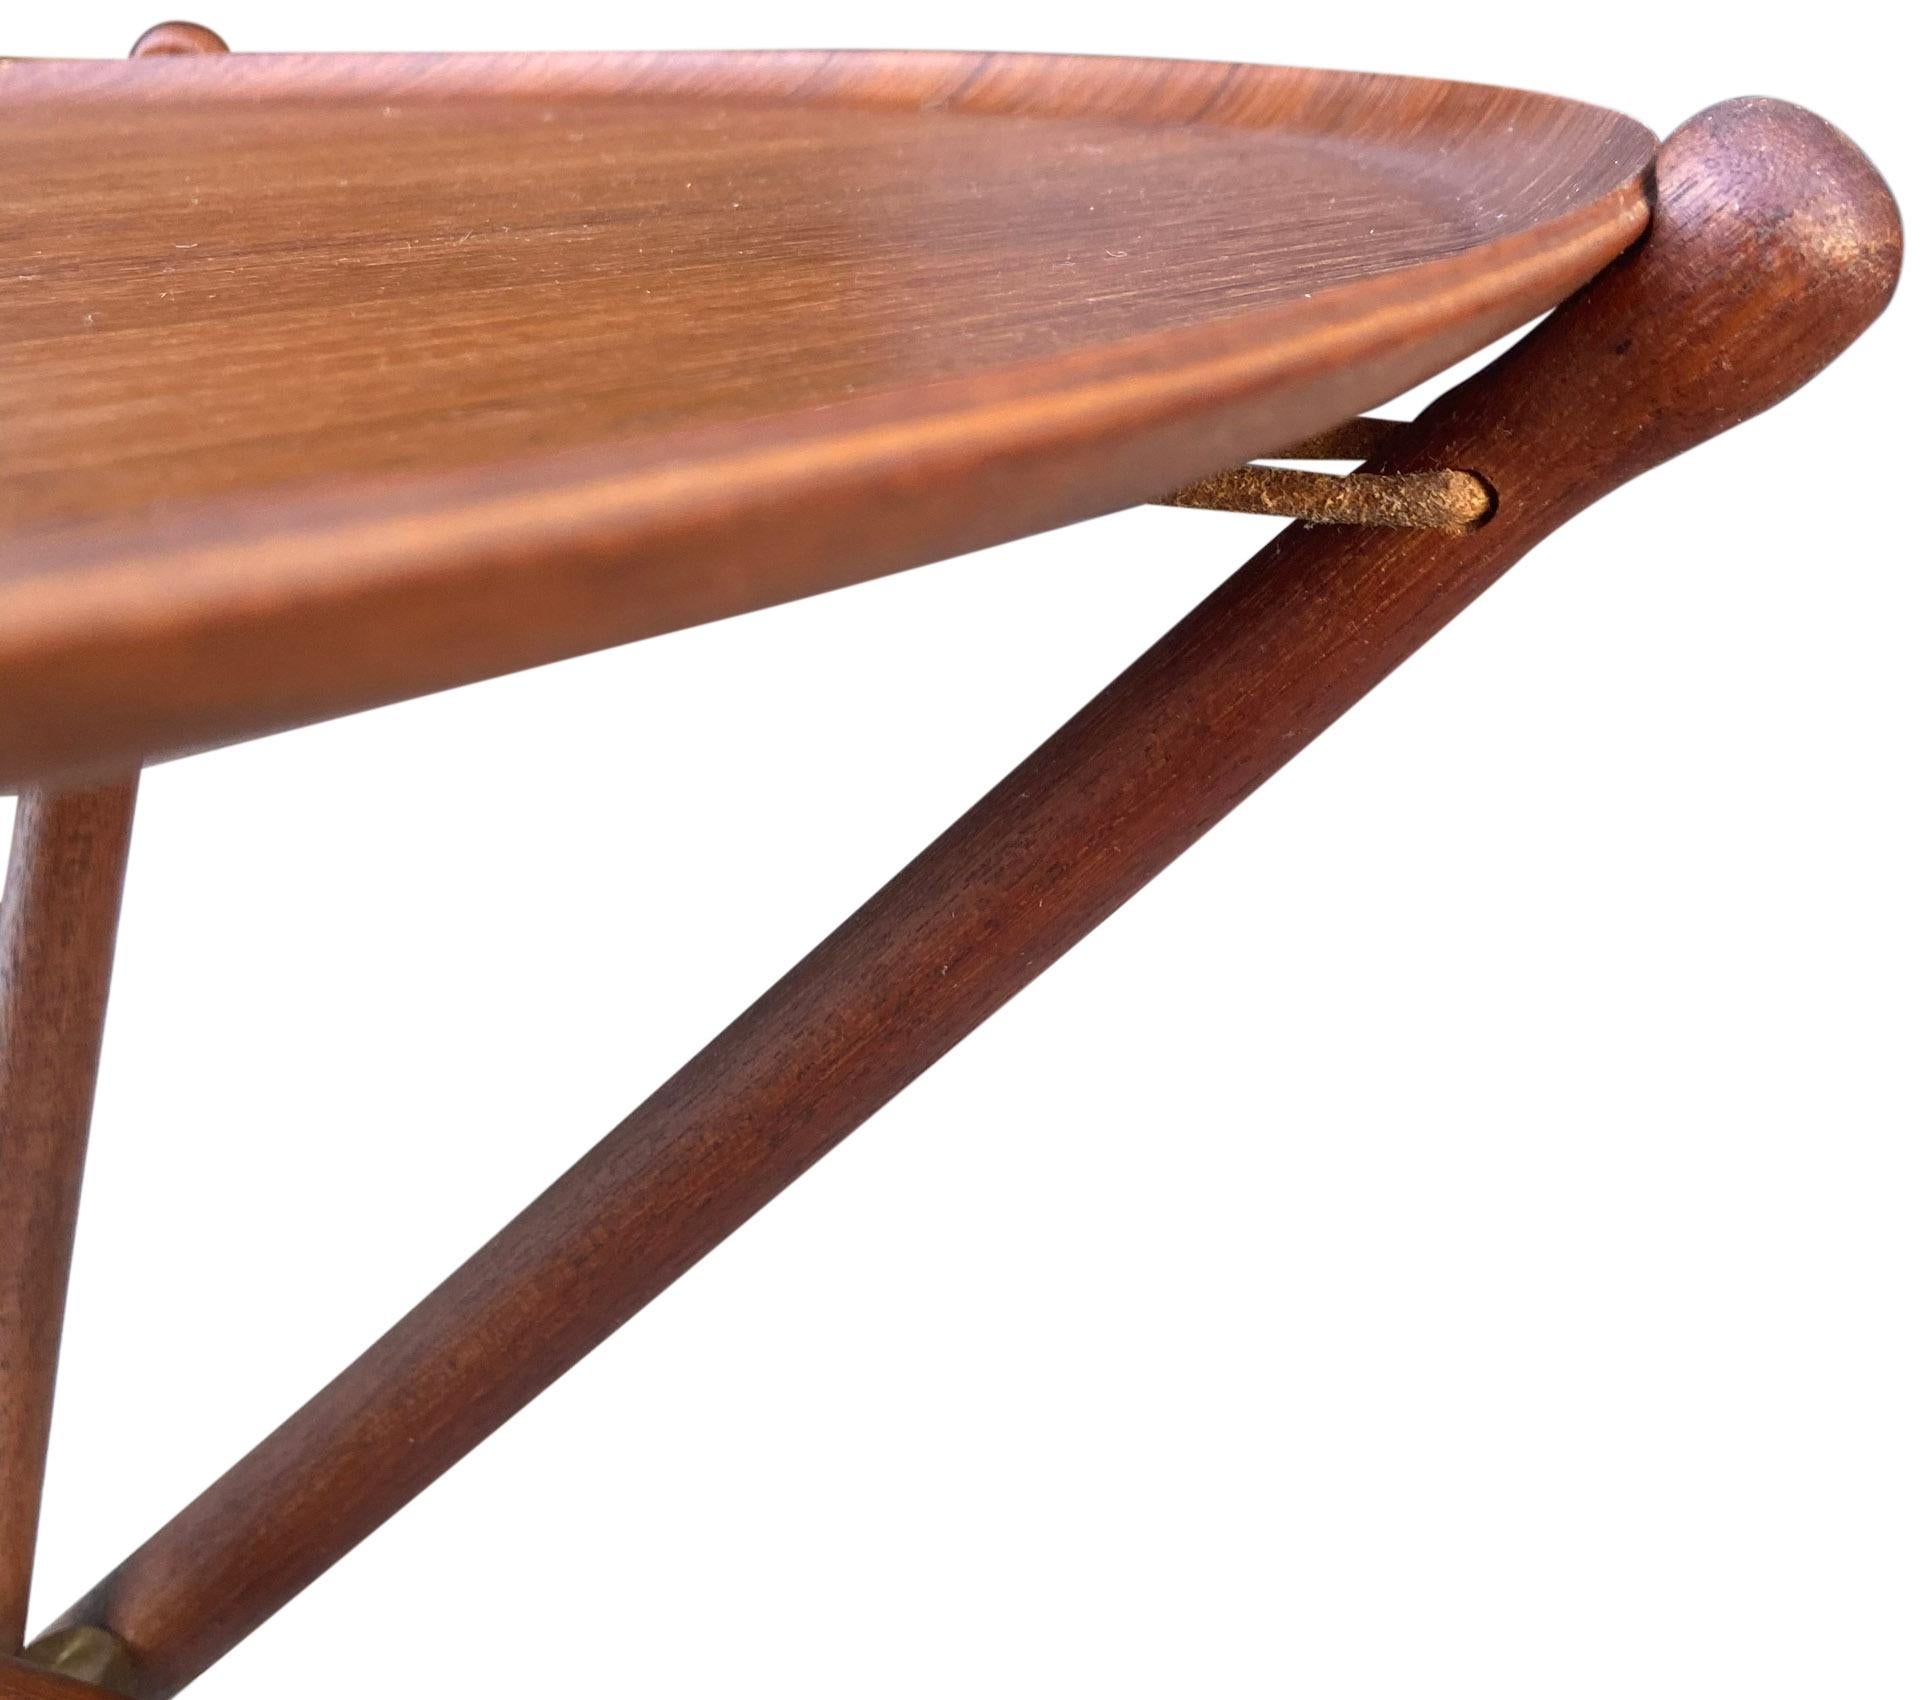 Nous vous proposons ces tables-plateaux scandinaves réalisées par Nils Trautner pour Aris. Ces merveilleuses tables tripodes utilisent un cordon de cuir épais et des accessoires en laiton pour créer une tension qui maintient solidement le plateau en